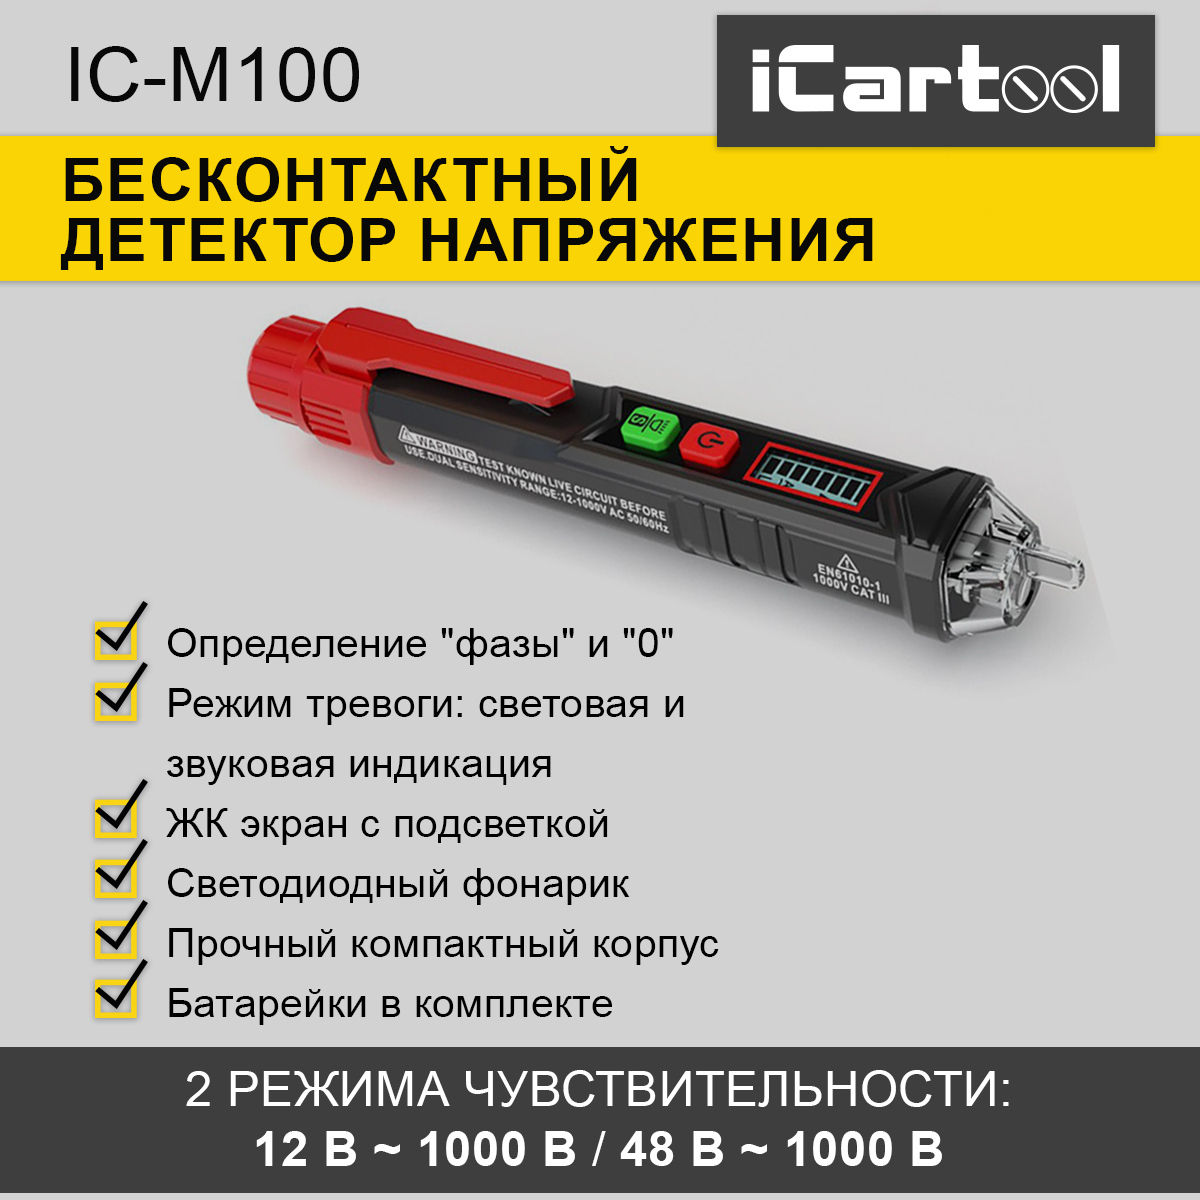 Бесконтактный детектор напряжения iCartool IC-M100 провода для мультиметра